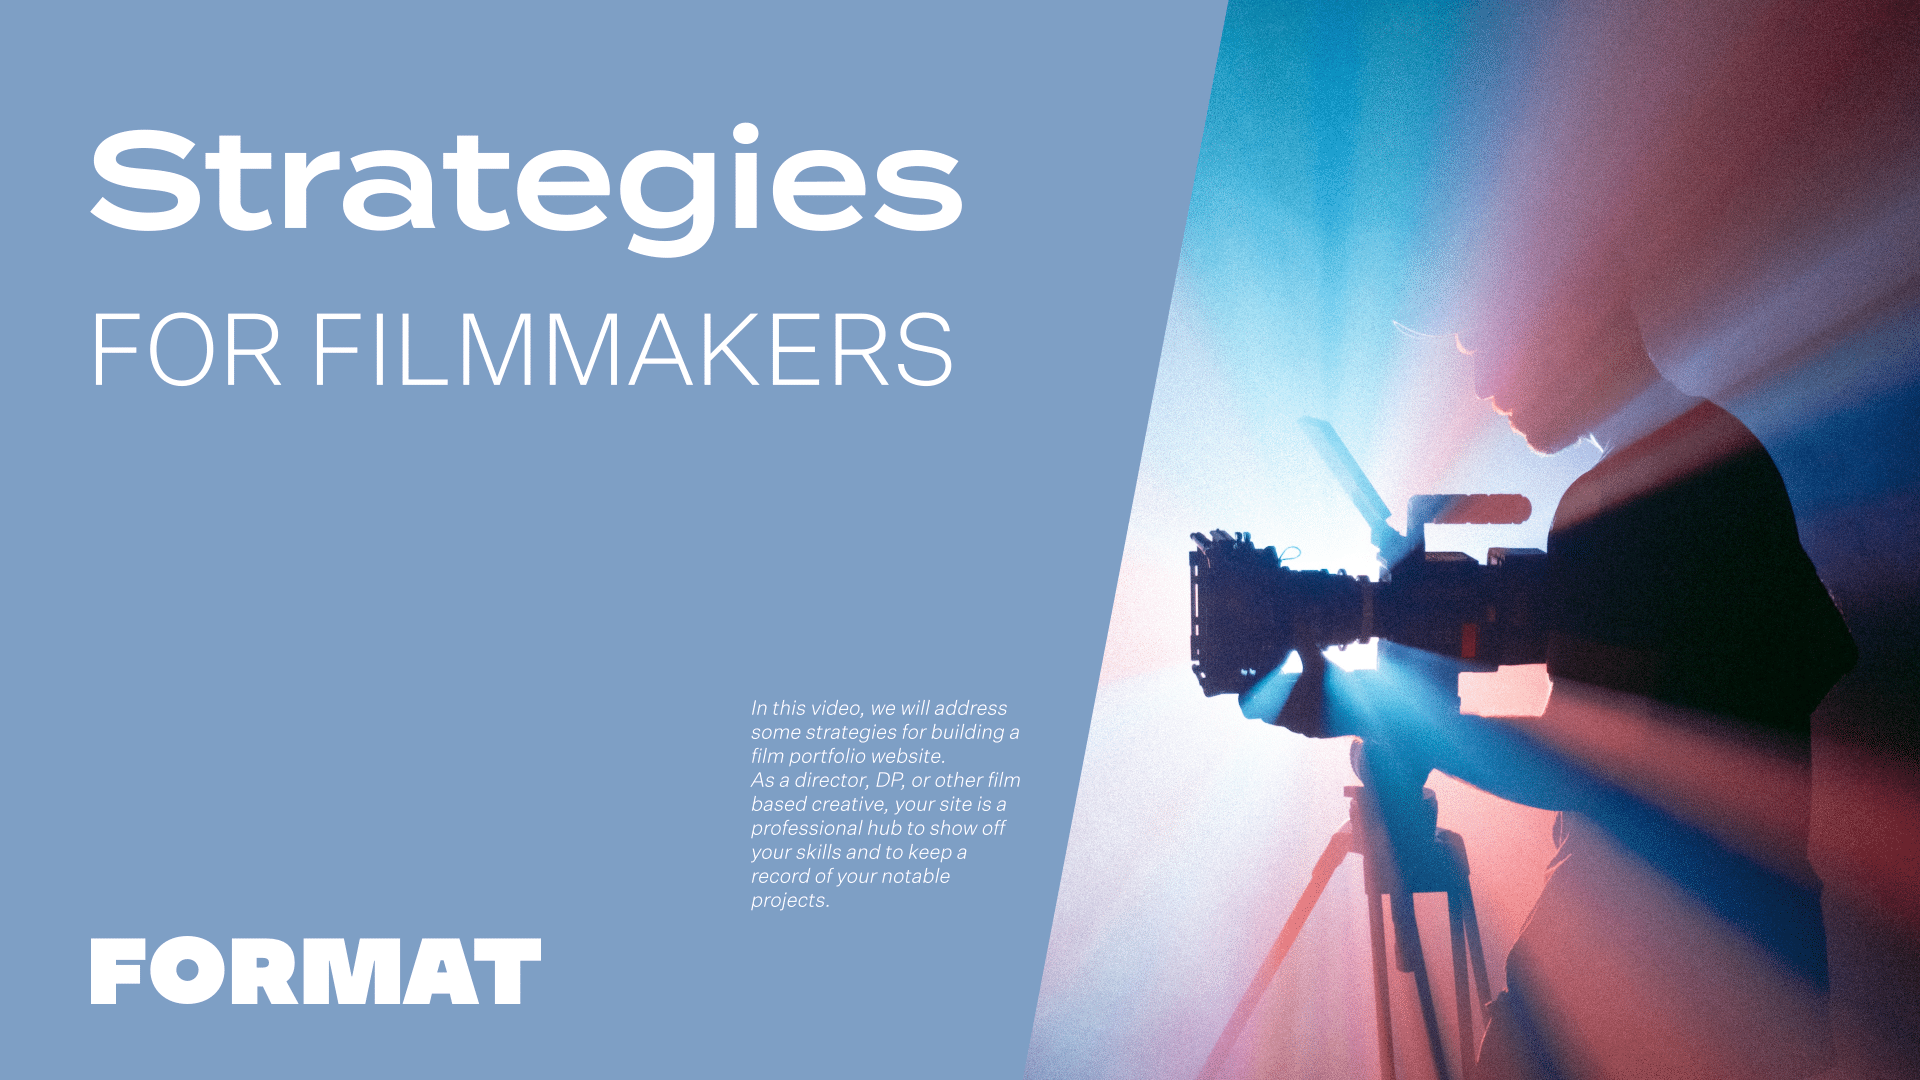 O texto da imagem diz "Strategies for Filmmakers" (Estratégias para cineastas) e mostra uma câmera de vídeo